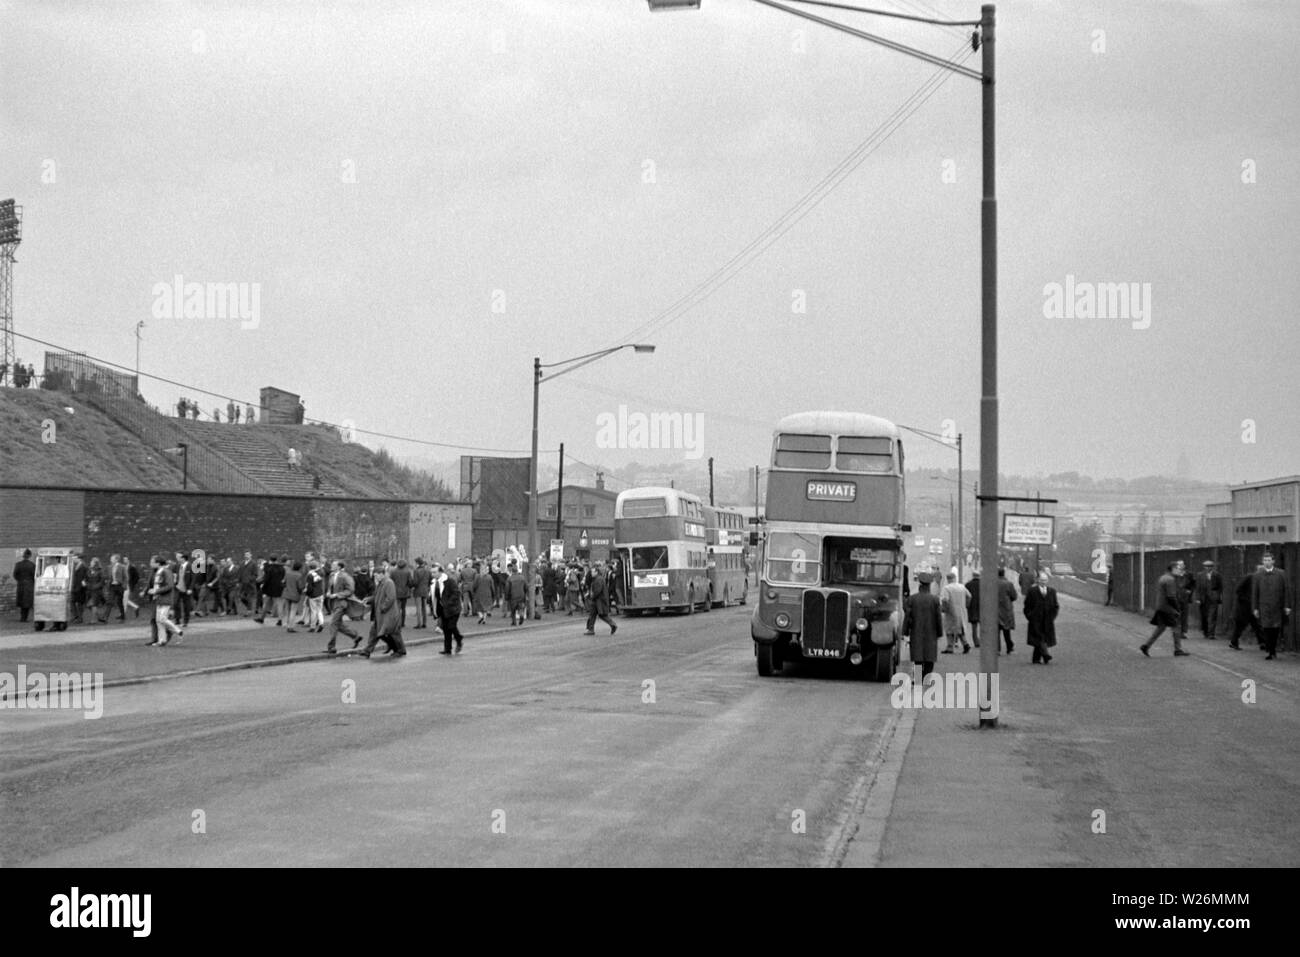 Jour de match à la Leeds United Football Ground. Probablement pris pendant les années 60, l'image montre la maison côté fans obtenir des bus pour voir leur équipe en action. La principale gare routière à l'image est un corps Waymann AEC Regent III qui aurait été nouveau en 1952 Banque D'Images